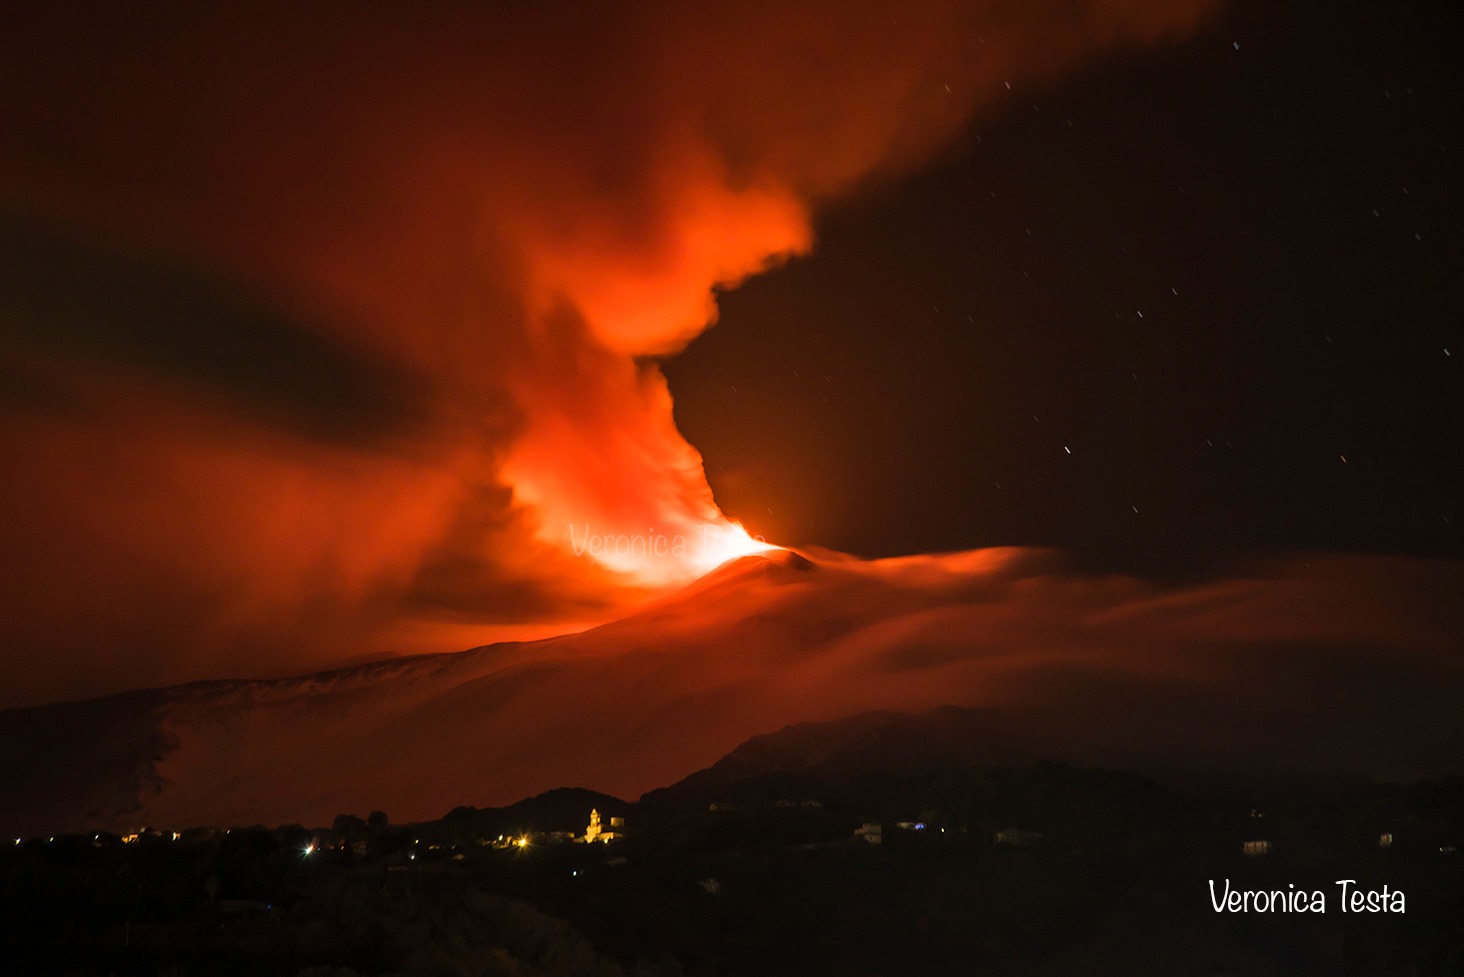 Eruzione Etna, diminuiscono tremore vulcanico e colata: sporadiche emissioni di cenere nel pomeriggio